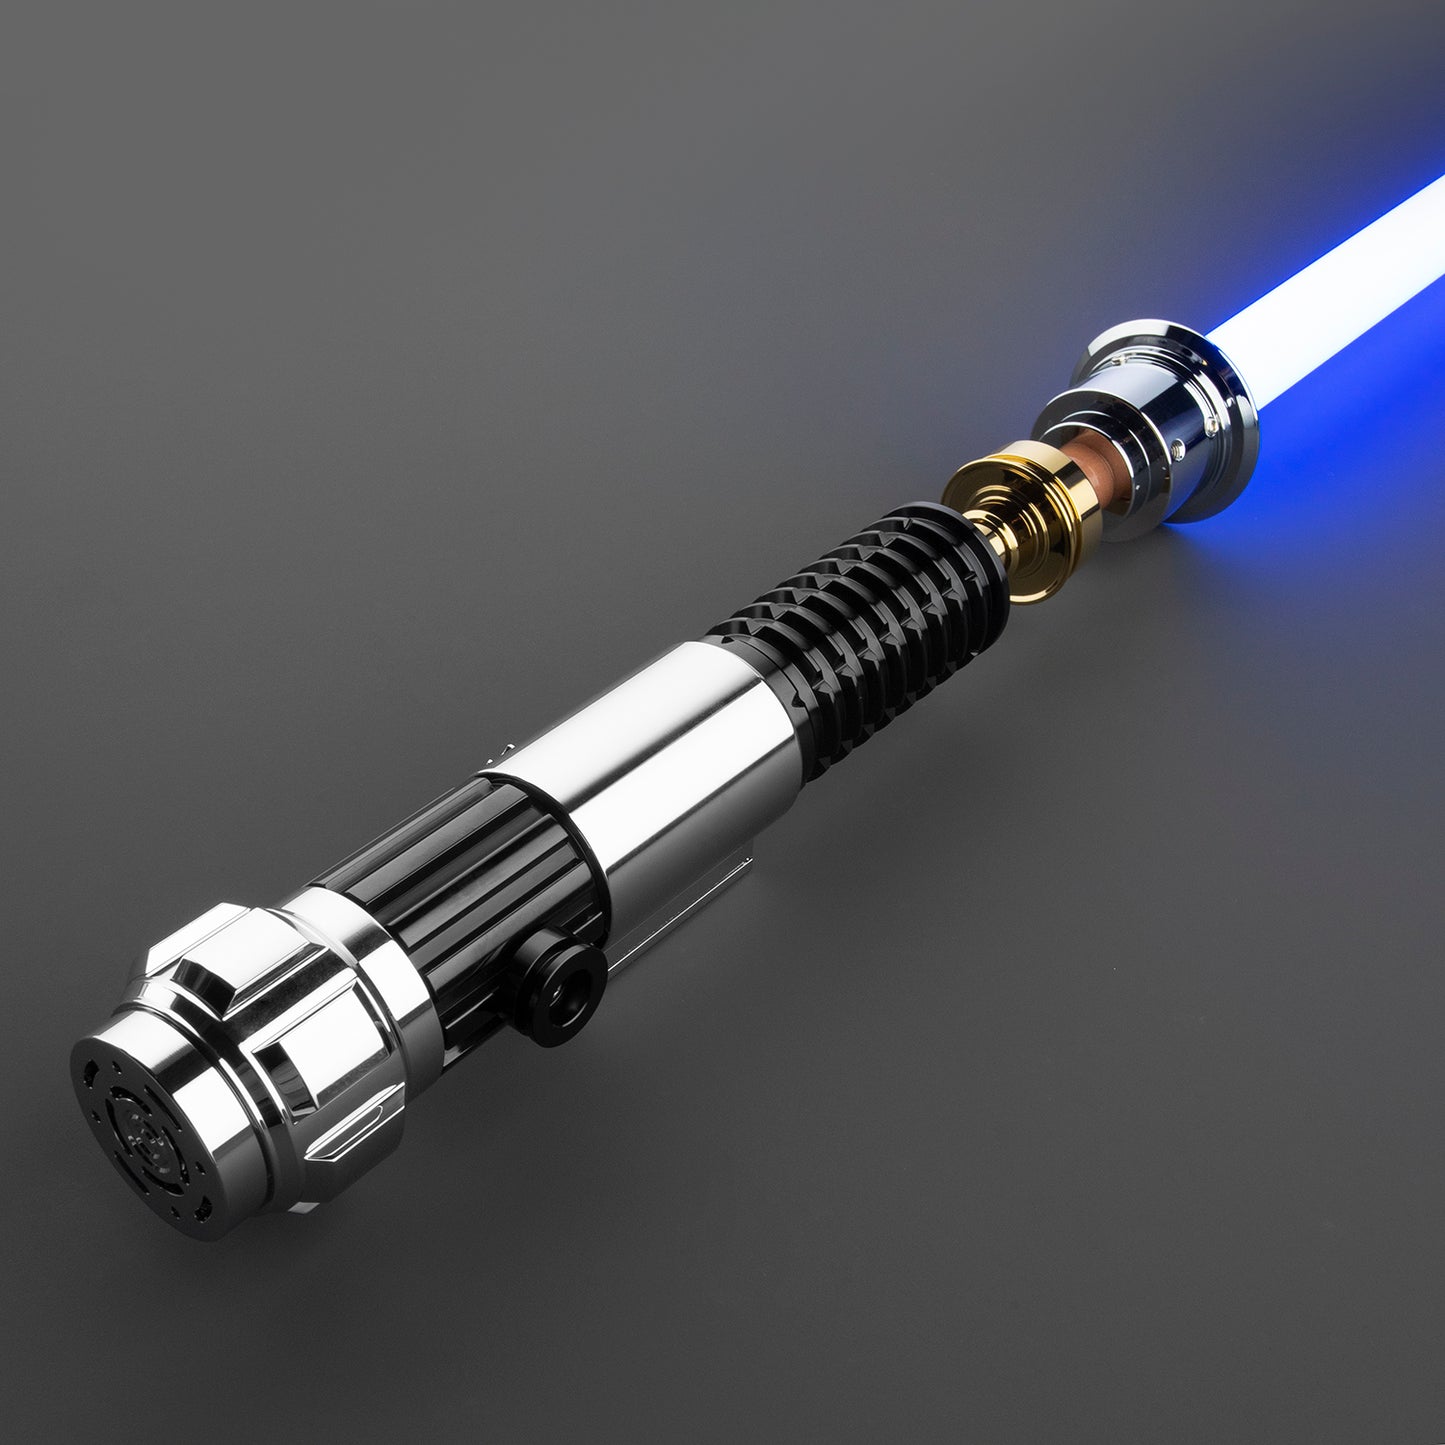 The Blade of Resilience: Obi Wan Kenobi's final Lightsaber